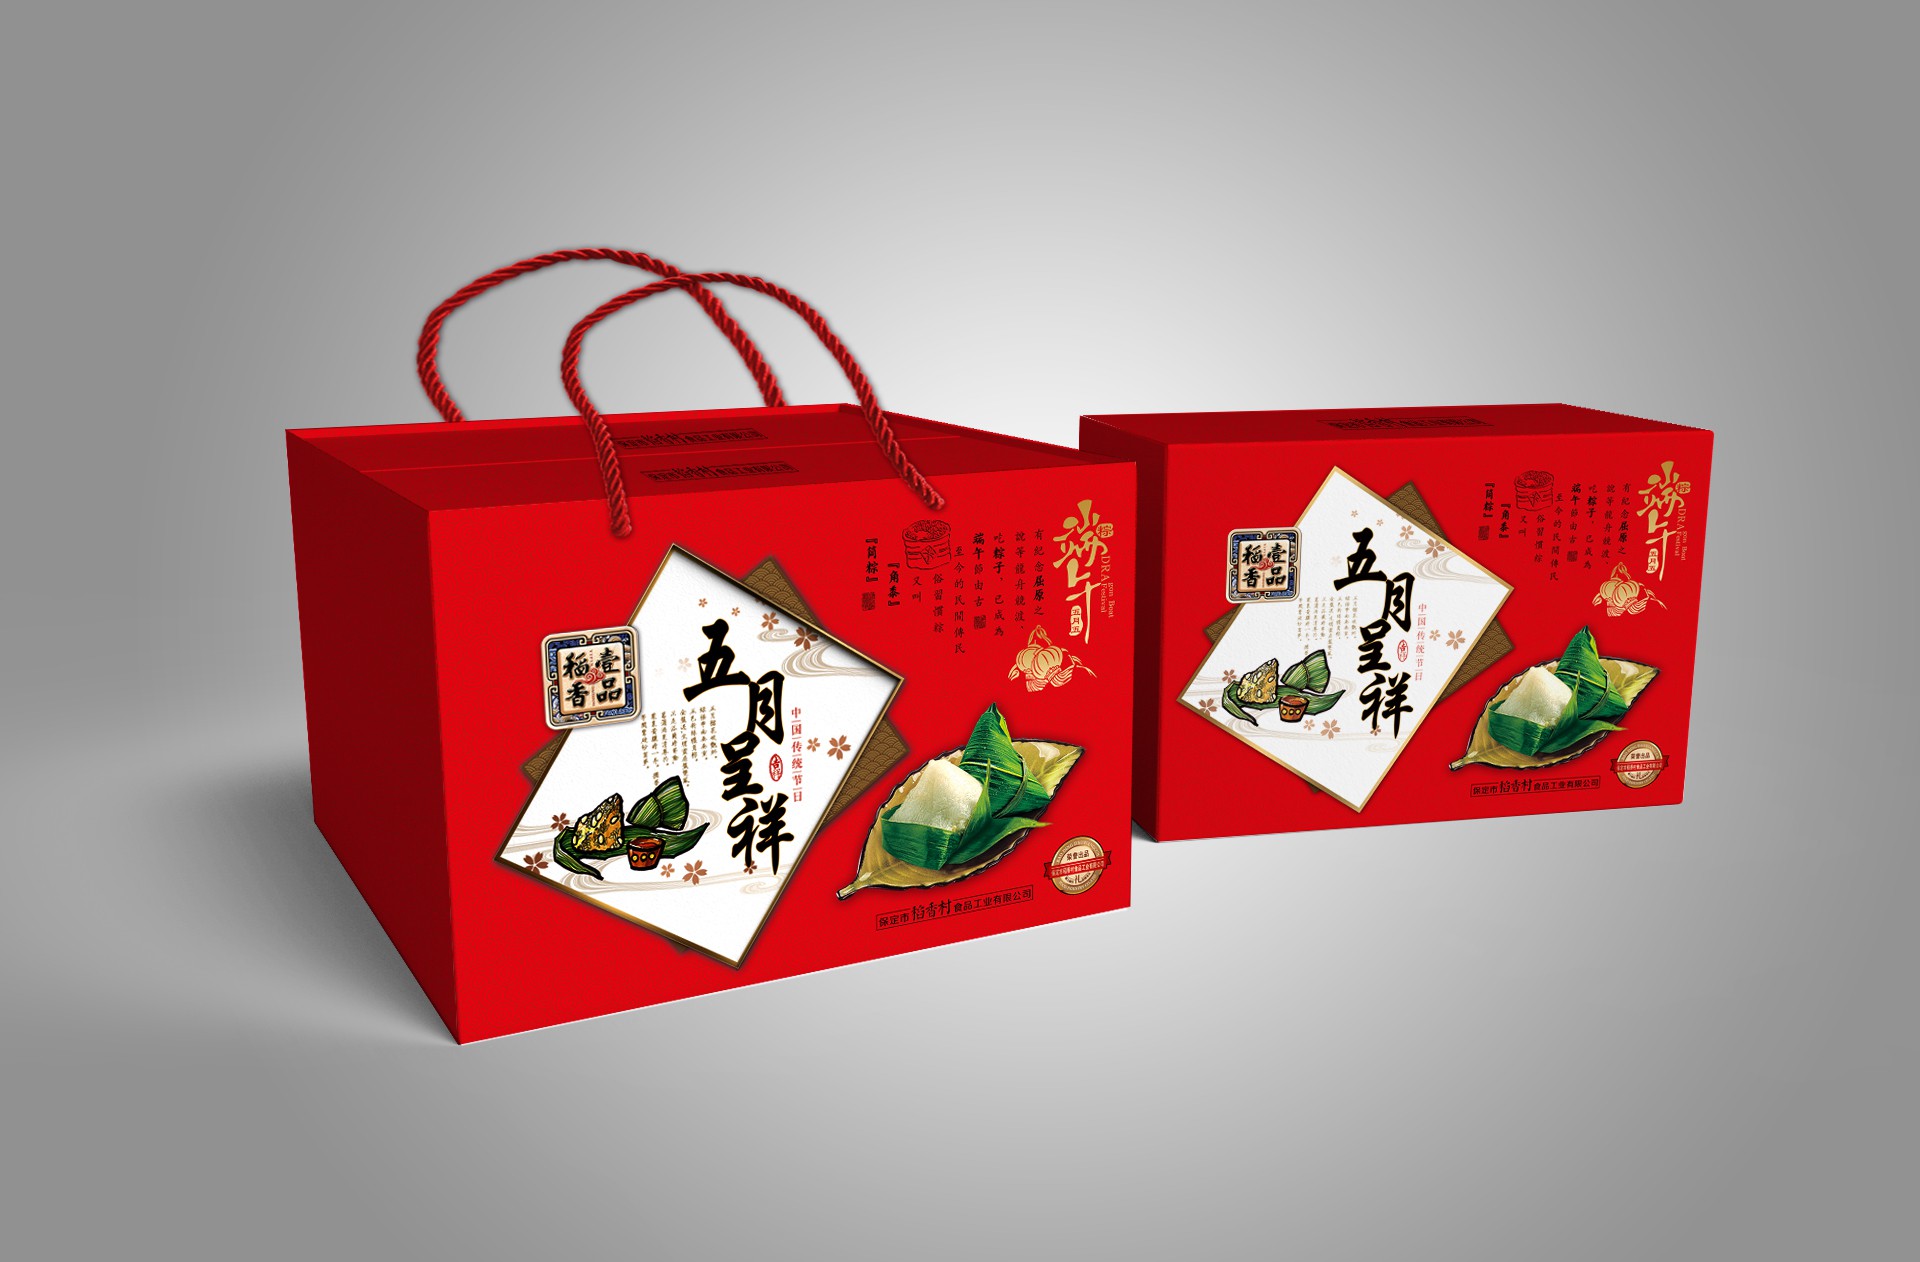 热门昆明礼盒包装设计公司案例排名前六名单揭晓 